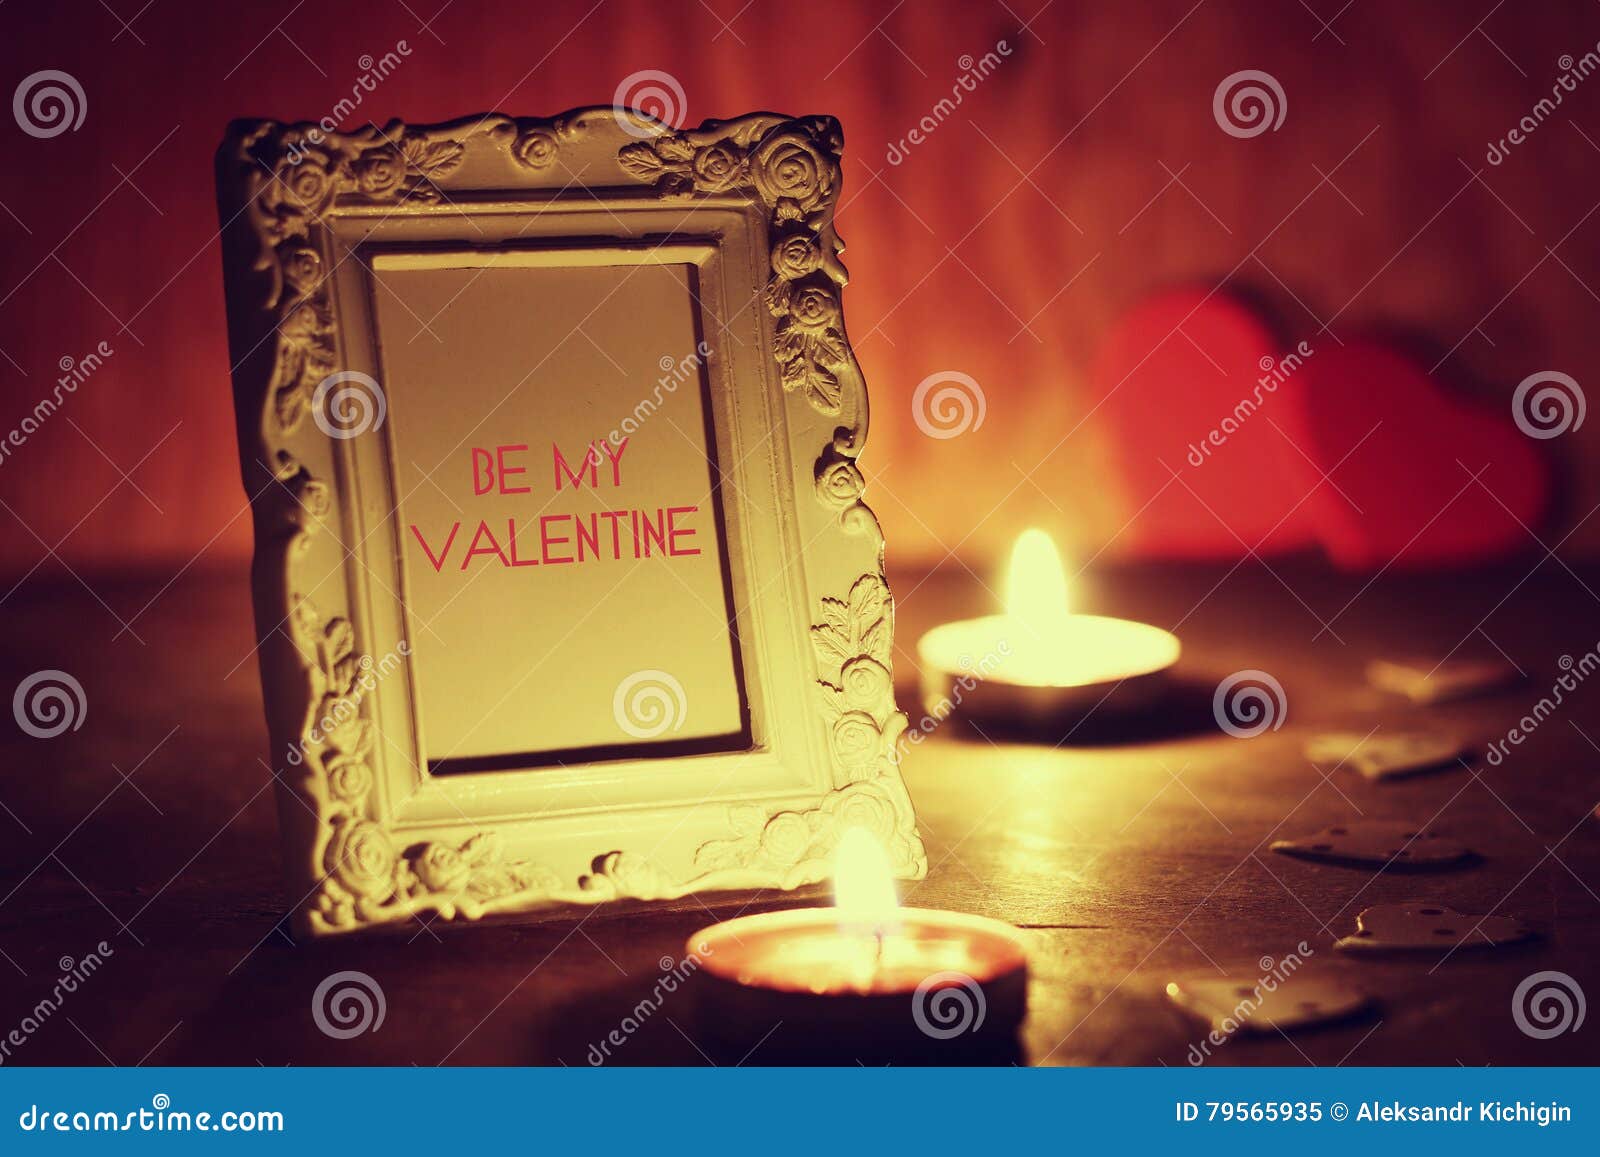 Valentine& X27; O Dia De S Candles O Vinho Imagem de Stock - Imagem de ...